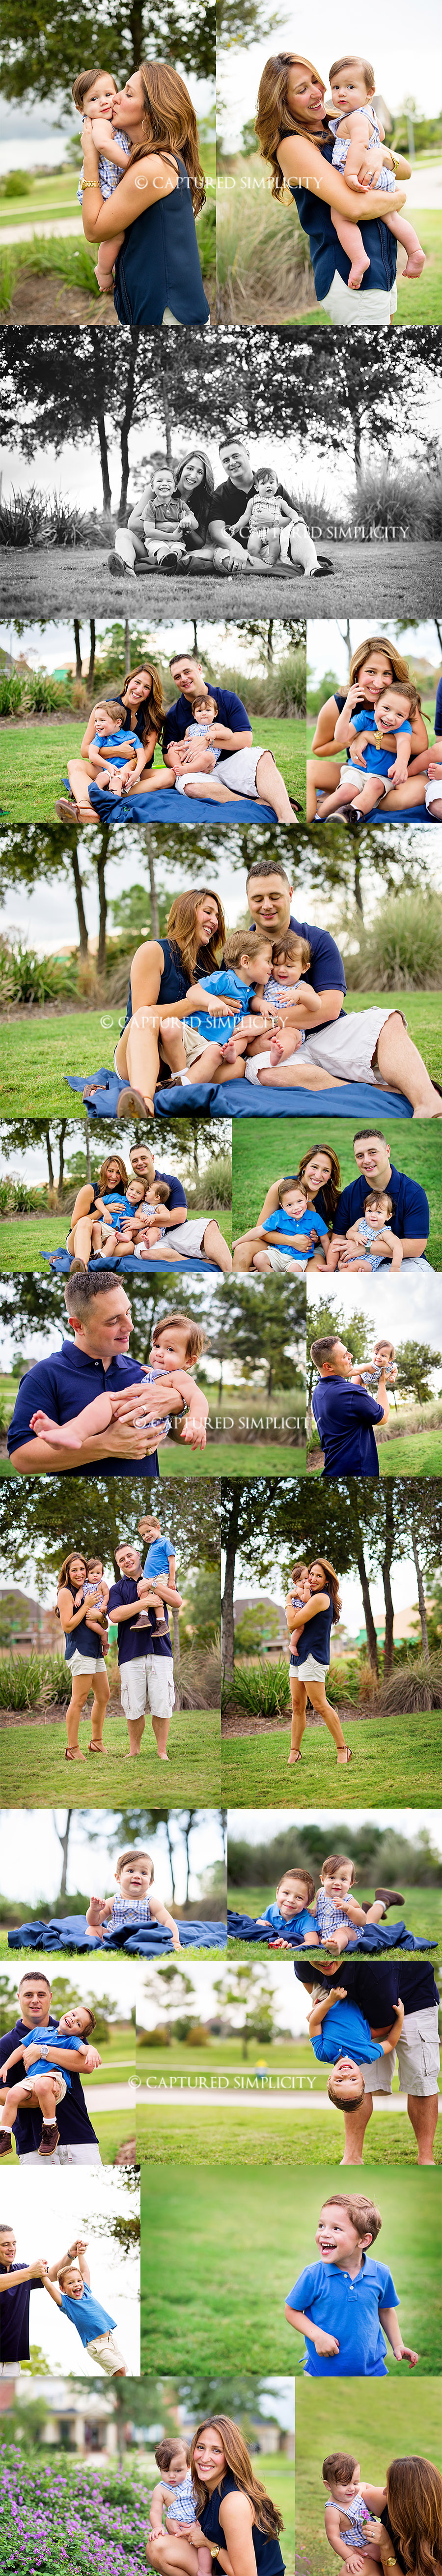 family photos houston, TX